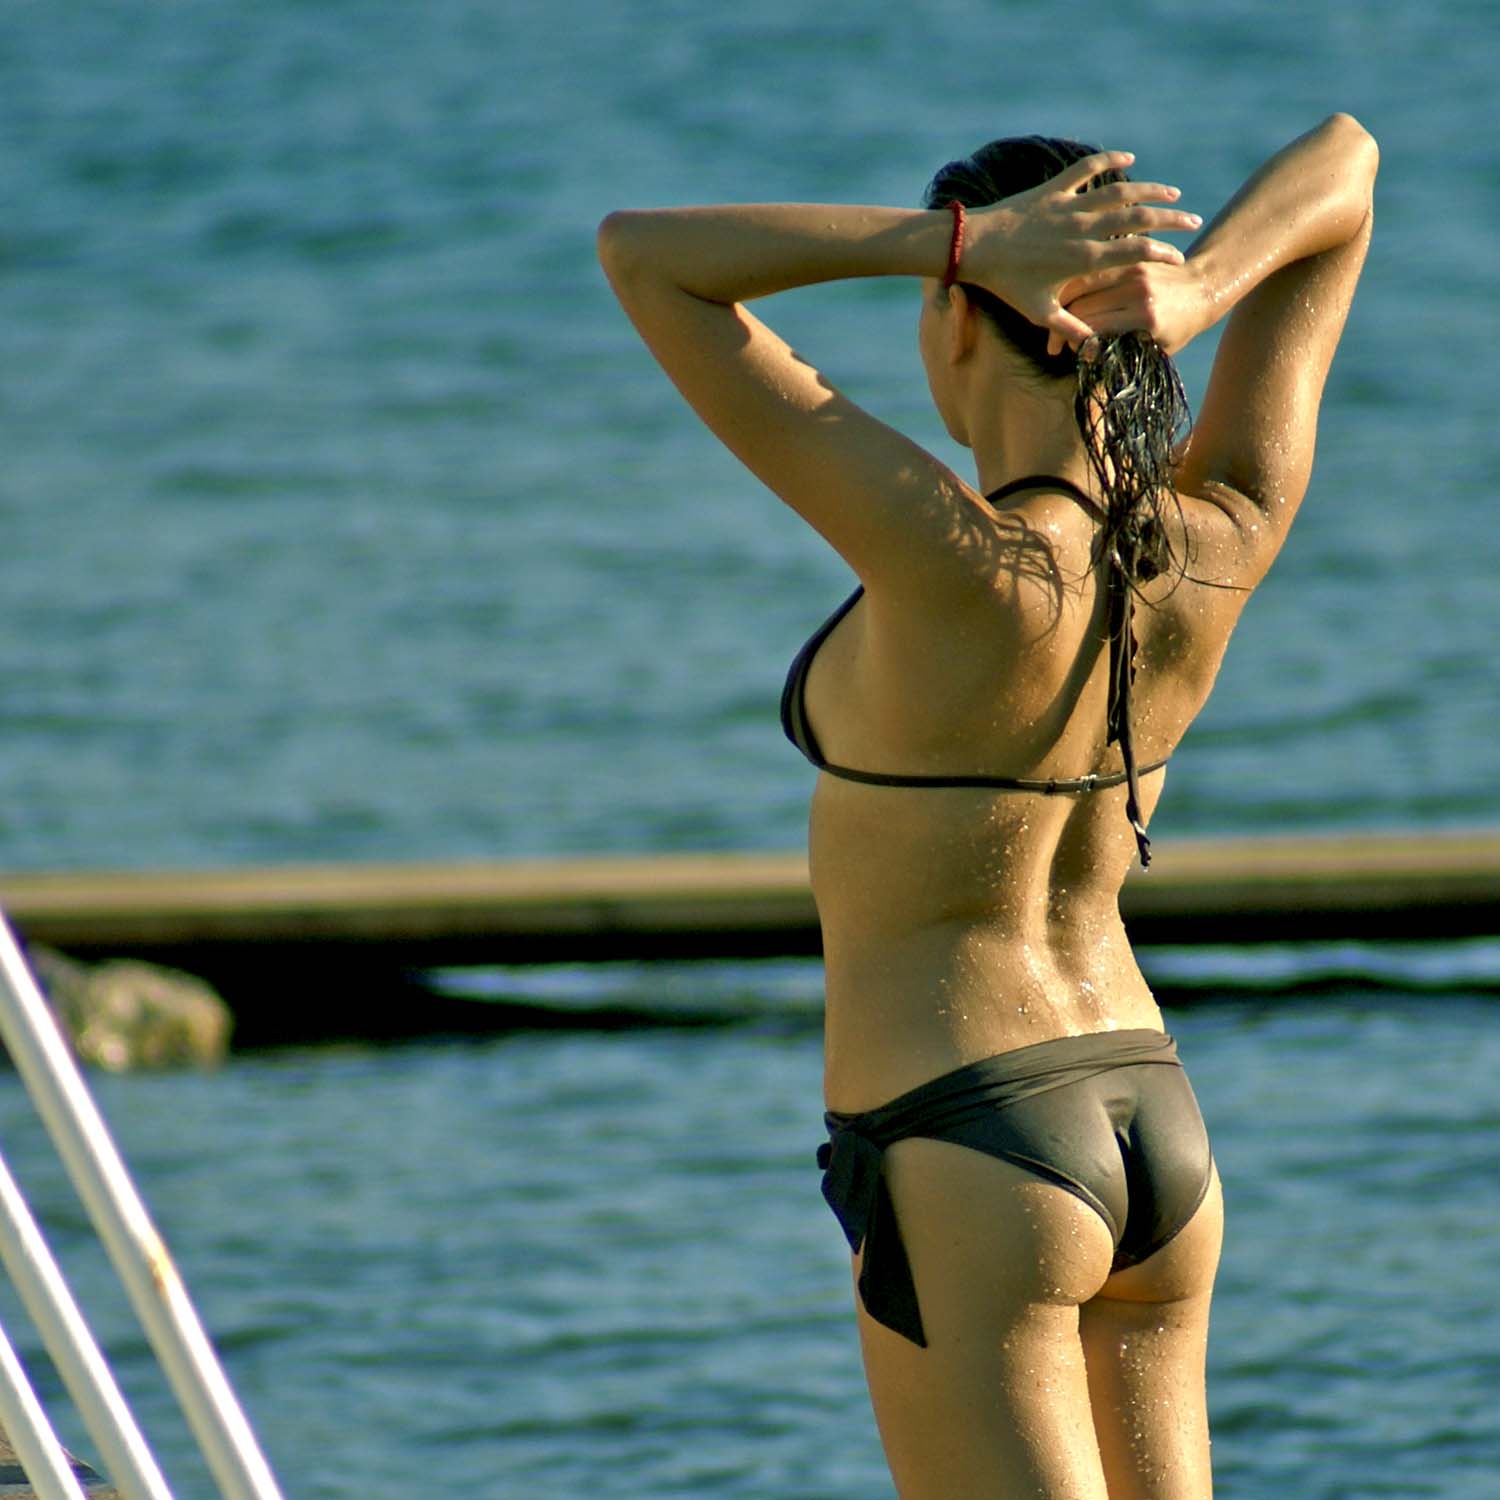 File:Naiad II - bikini stretch.jpg - Wikimedia Commons